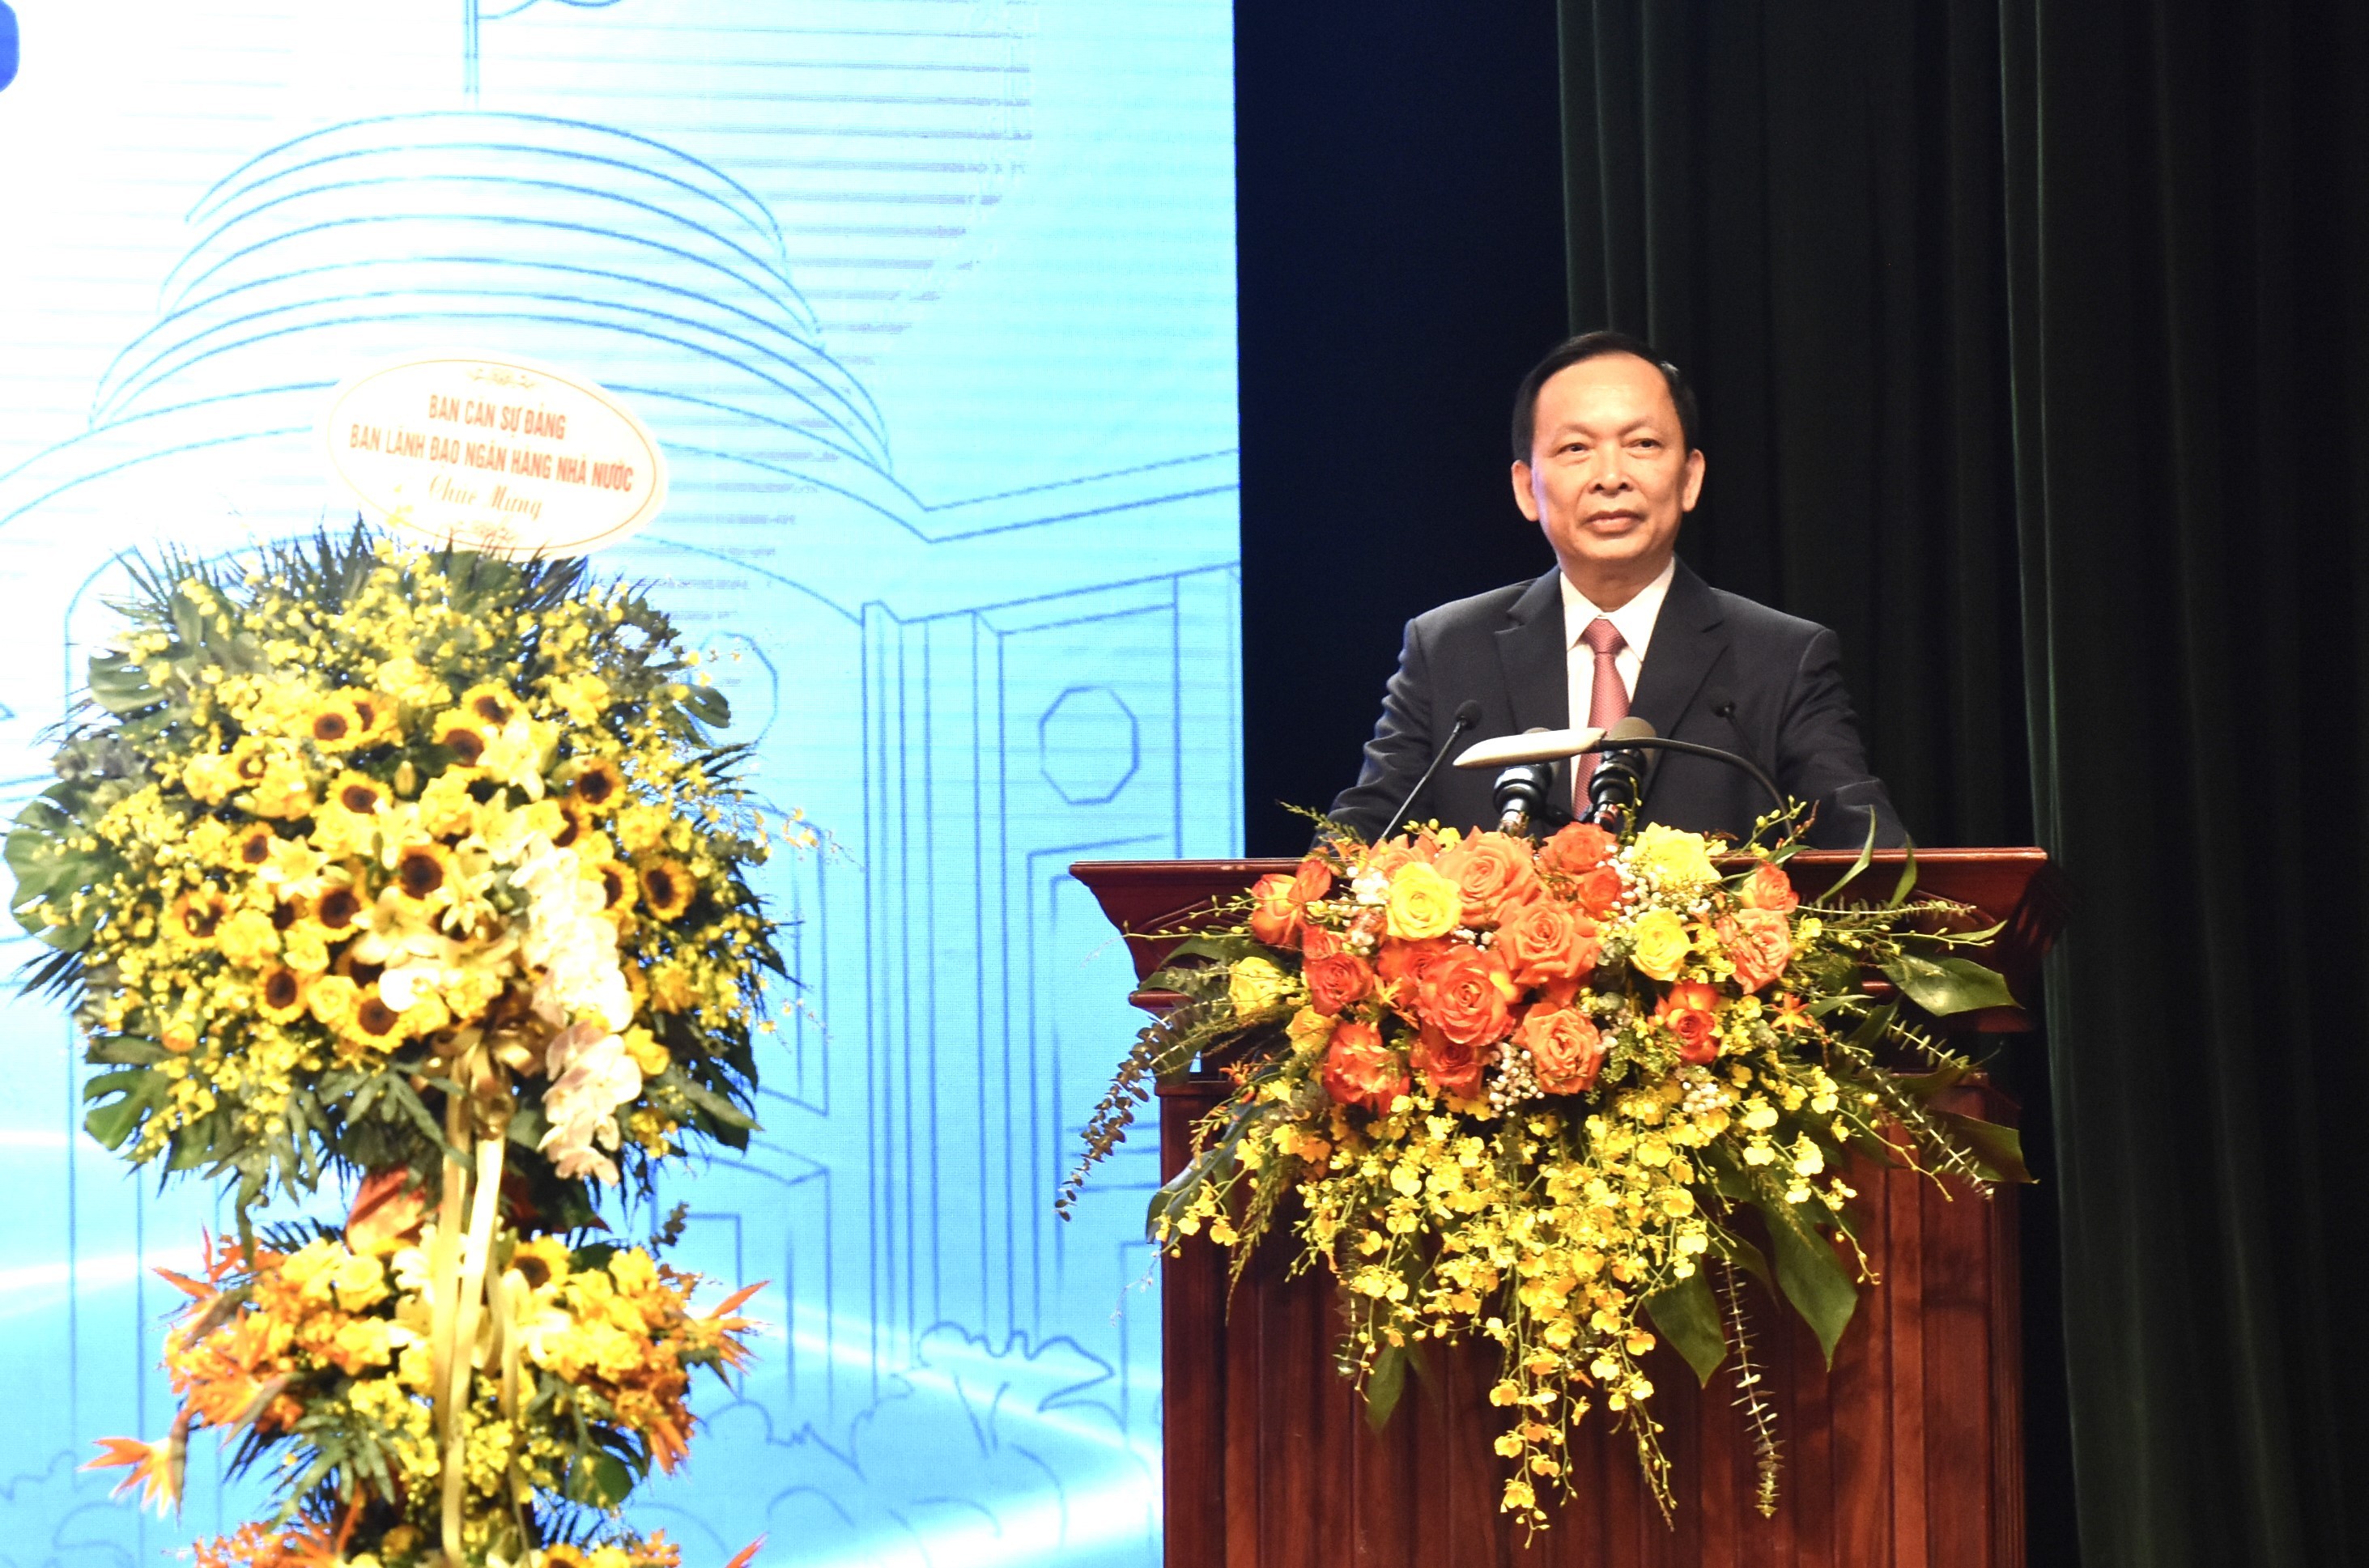 Ông Đào Minh Tú tái đắc cử Chủ tịch Công đoàn Ngân hàng Việt Nam khoá VII